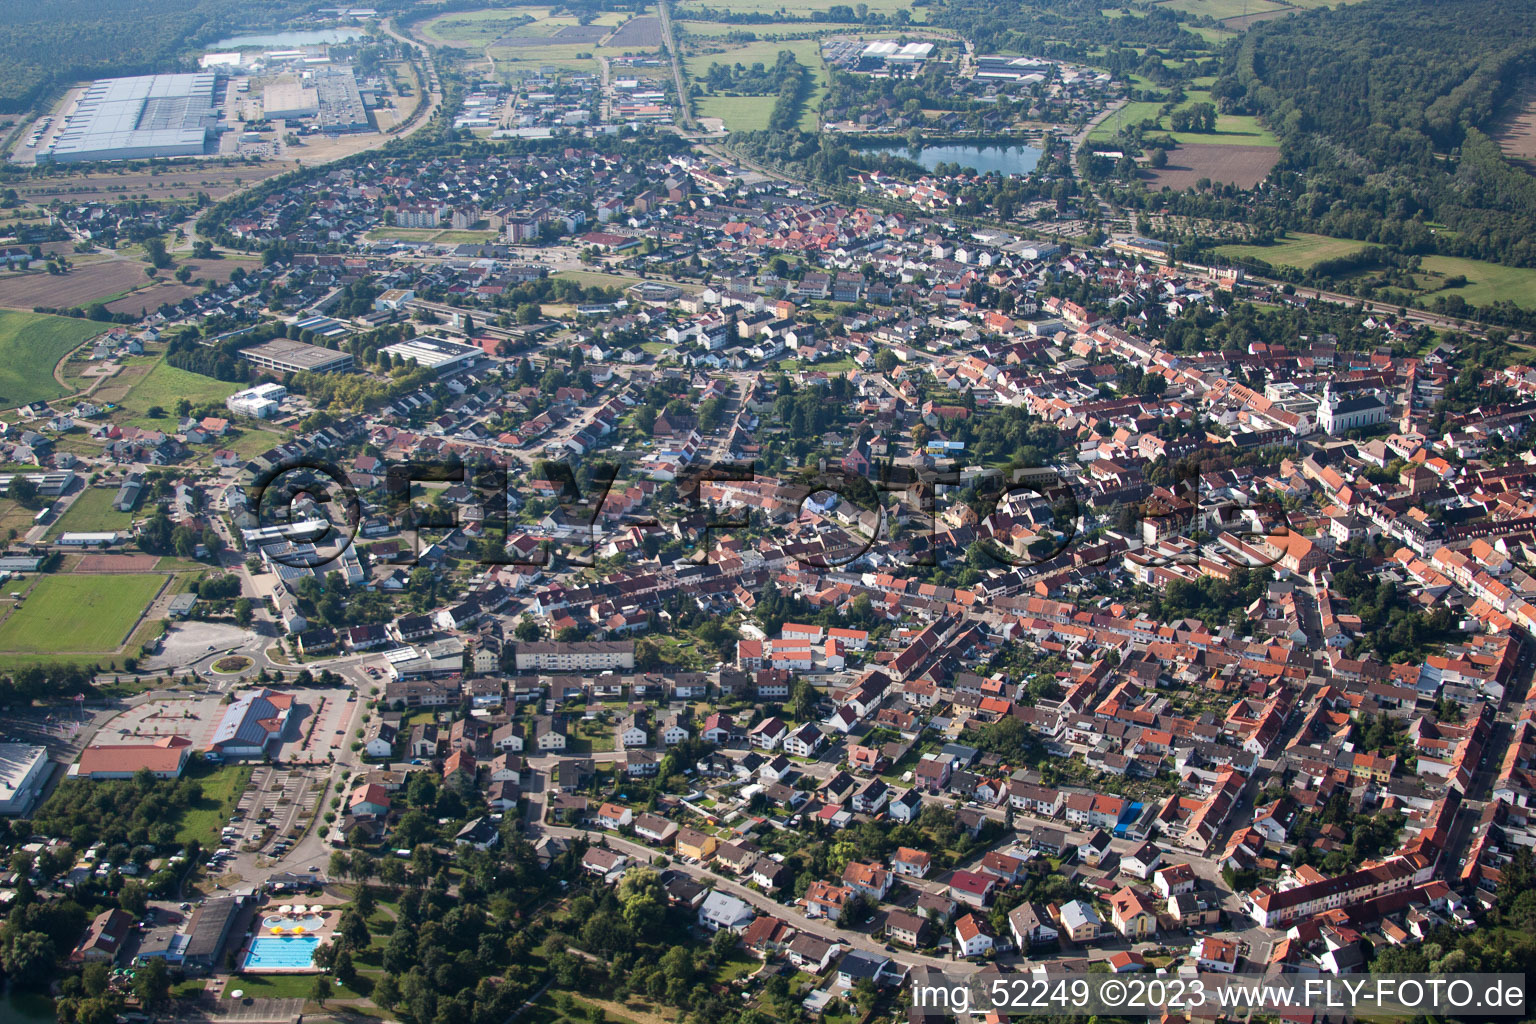 Philippsburg dans le département Bade-Wurtemberg, Allemagne vue d'en haut